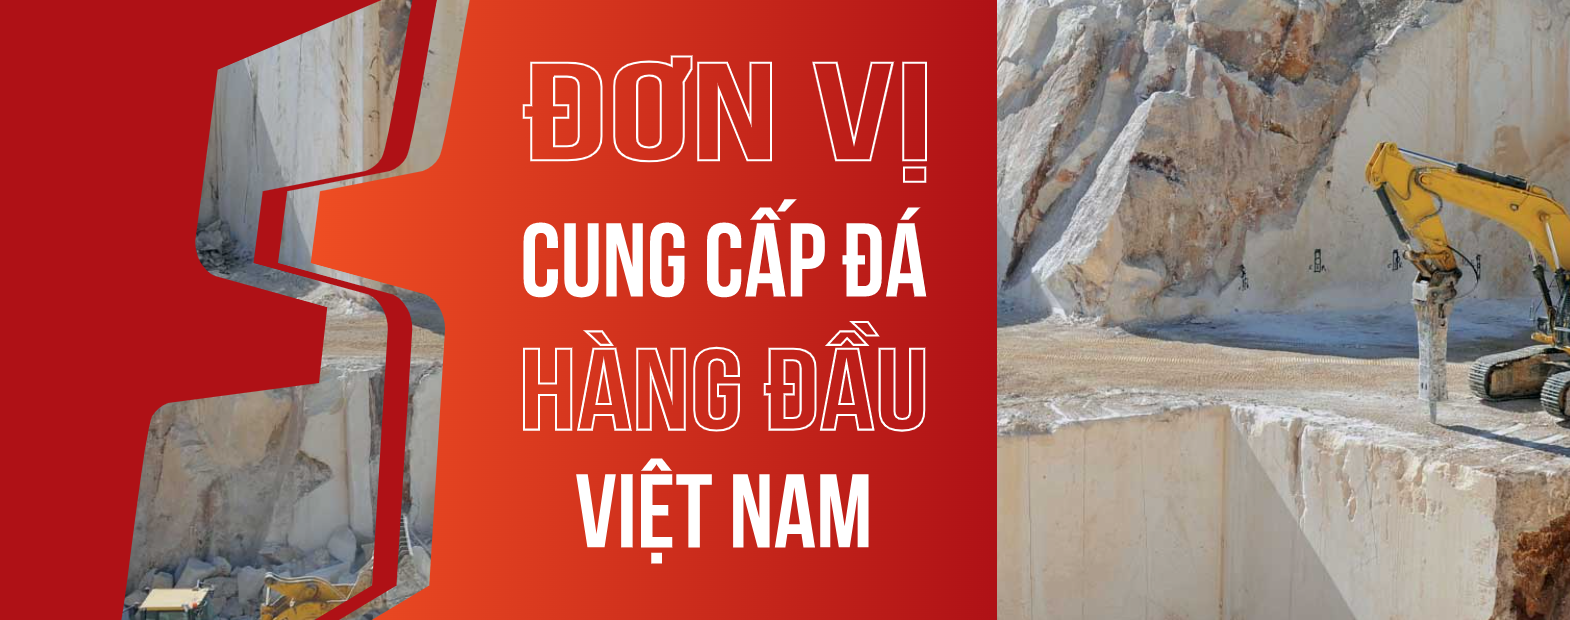 HSStone - nhà cung cấp các sản phẩm đá ốp lát thương hiệu Việt hàng đầu